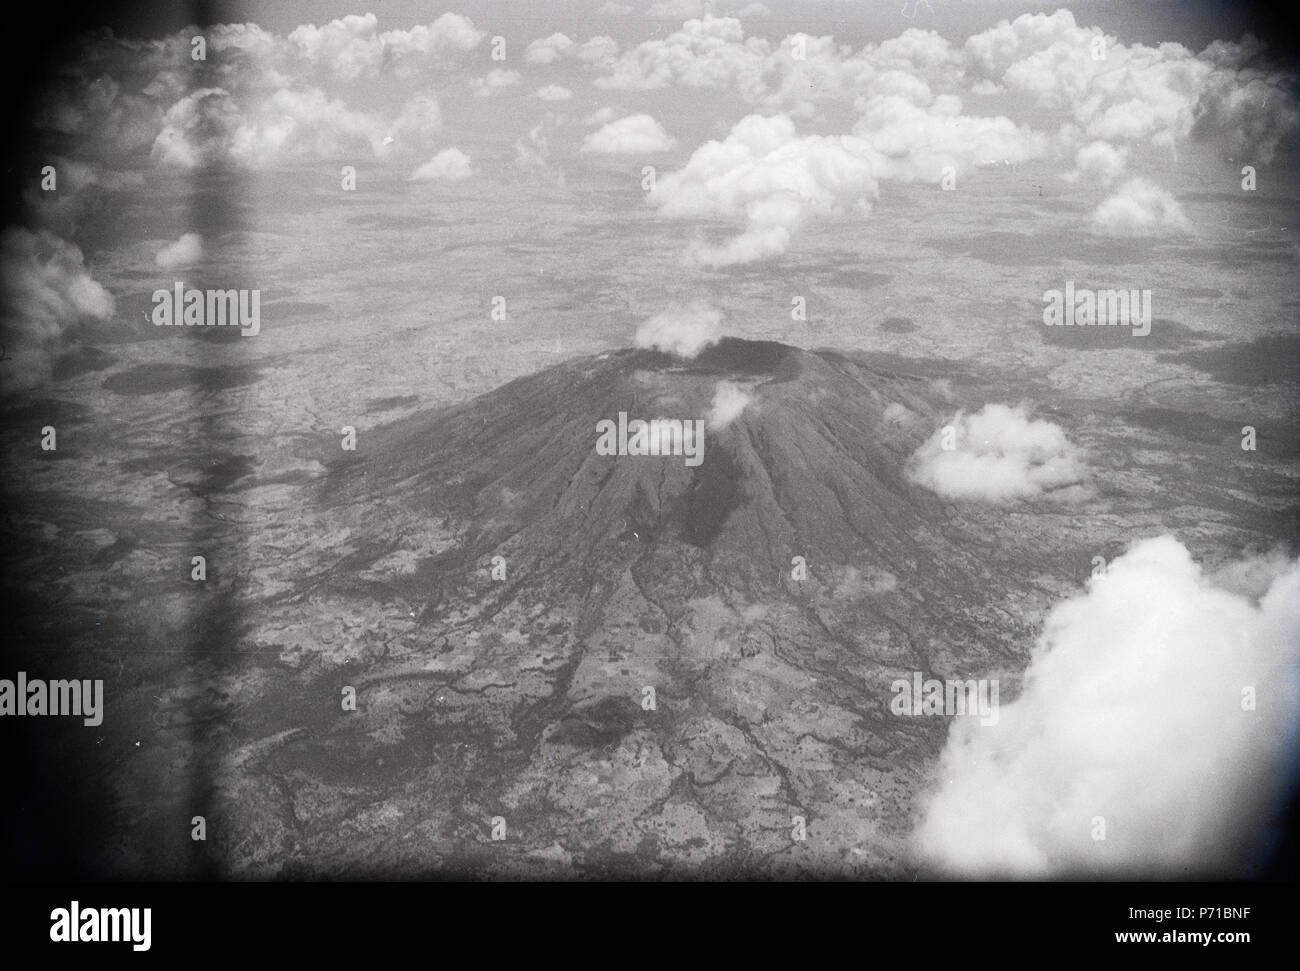 43 ETH-BIB-Alter Krater (Zukwala), Abessinien aus 6000 m Höhe-Abessinienflug 1934-LBS MH02-22-0199 Stock Photo